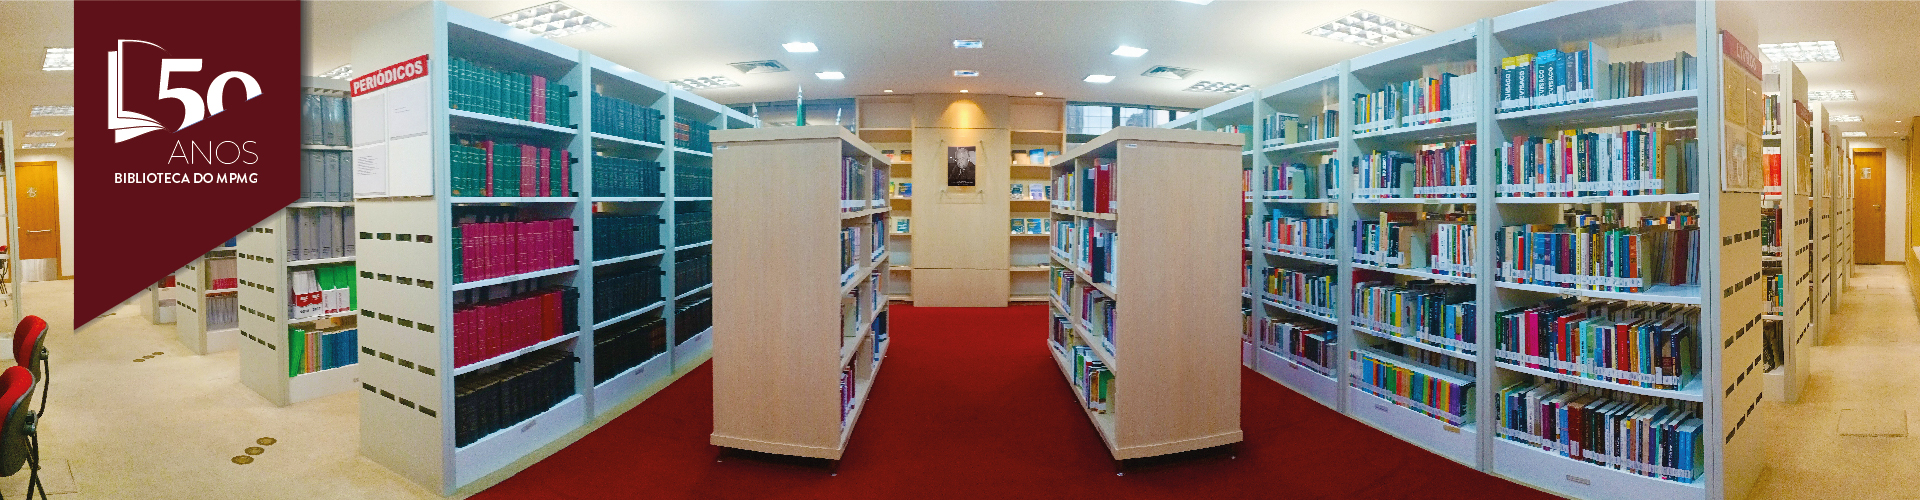 50 Anos Biblioteca Painel site